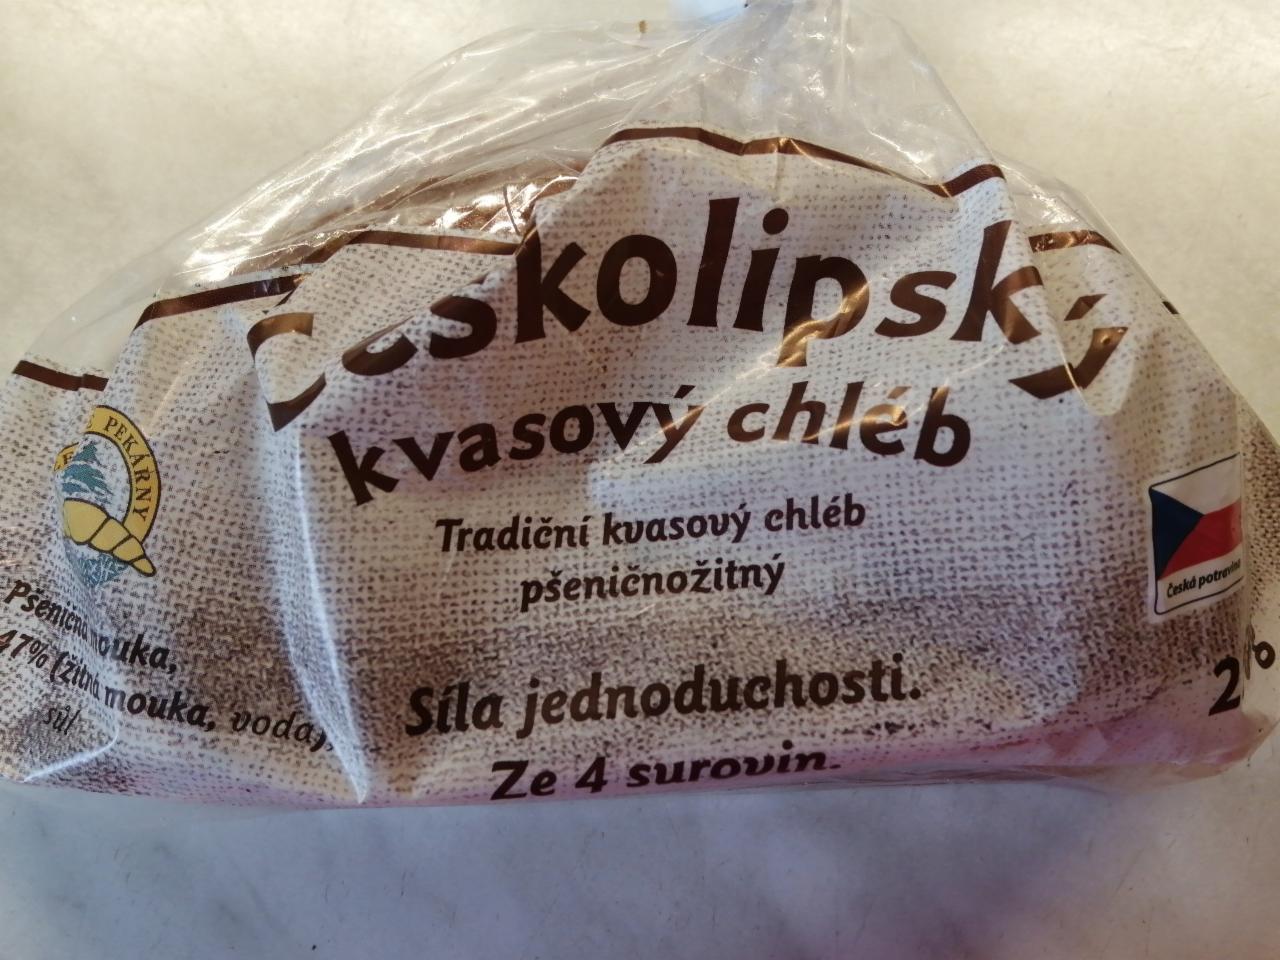 Fotografie - Českolipský kvasový chléb pšeničnožitný